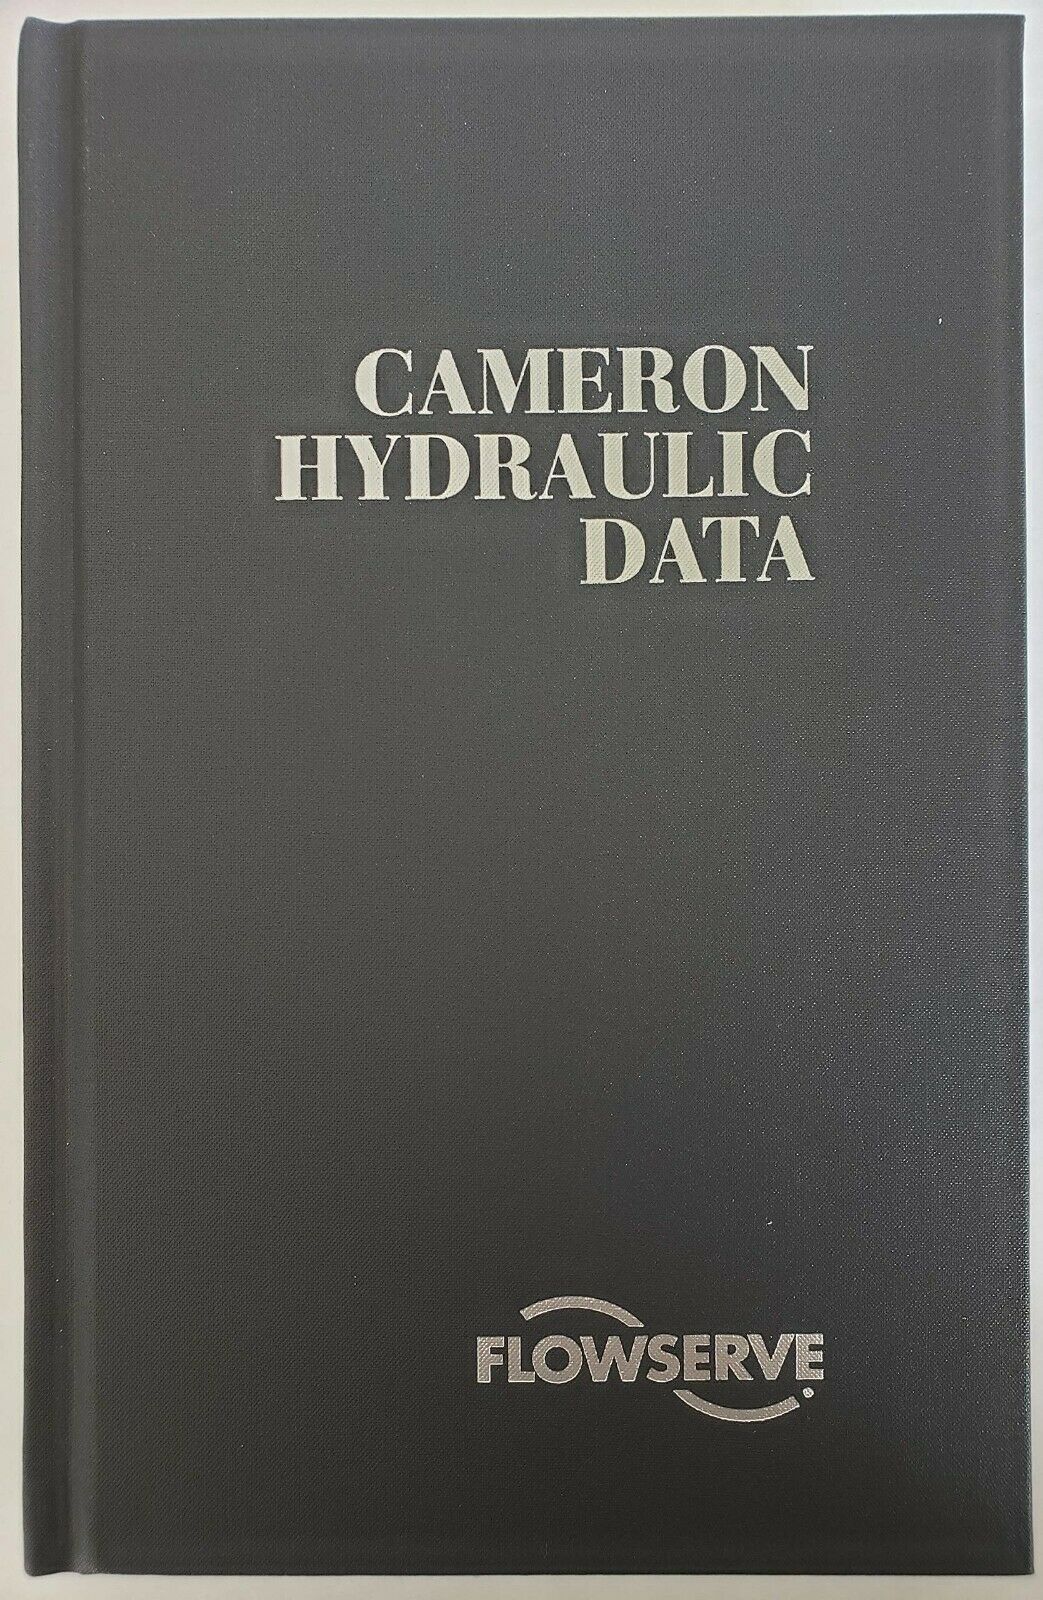 Cameron Hydraulic Data by Flowserve